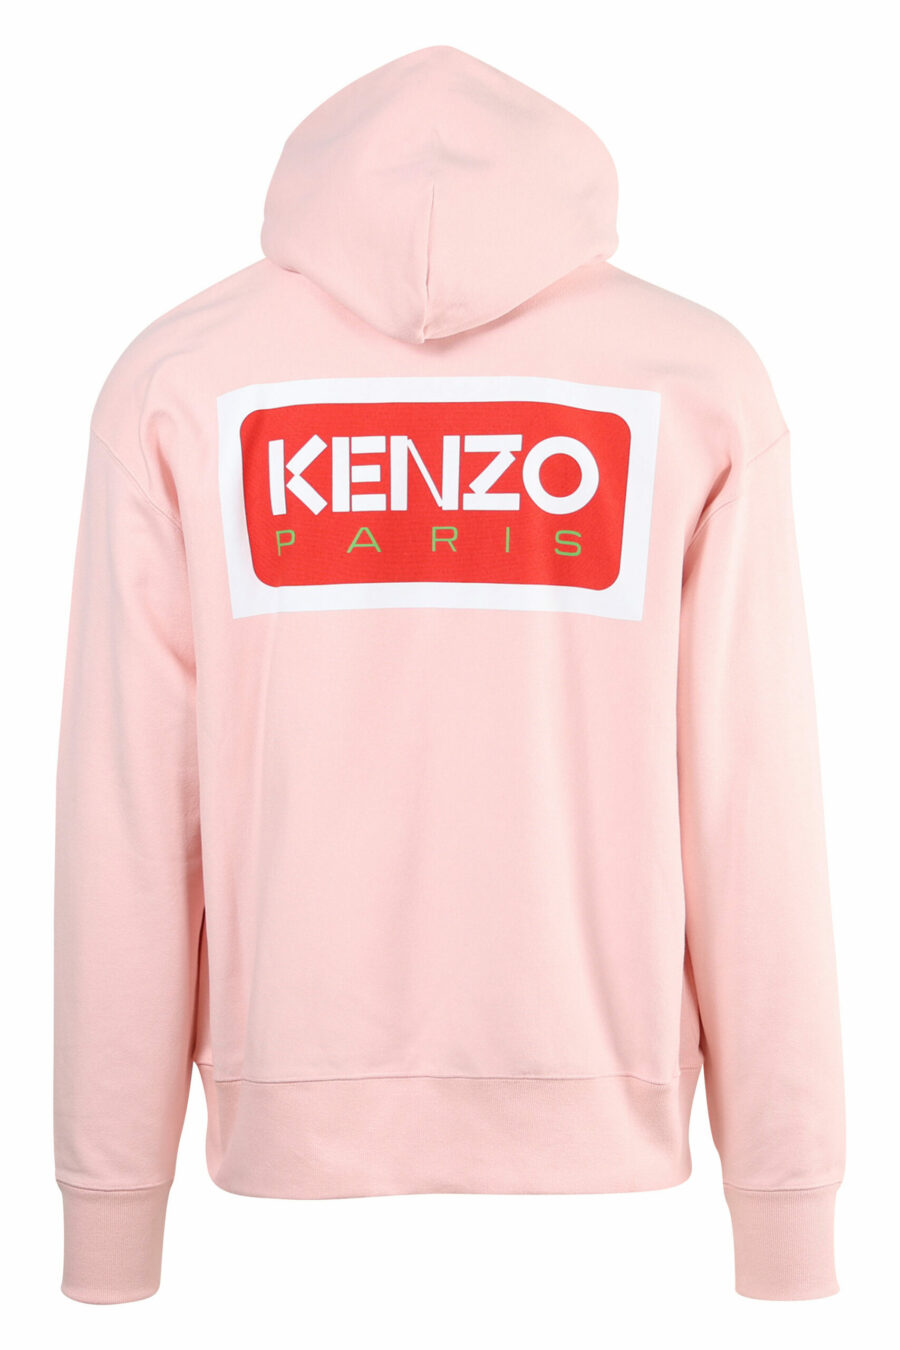 Sweat à capuche rose avec maxilogo "kenzo paris" dans le dos - 3612230537439 1 scaled